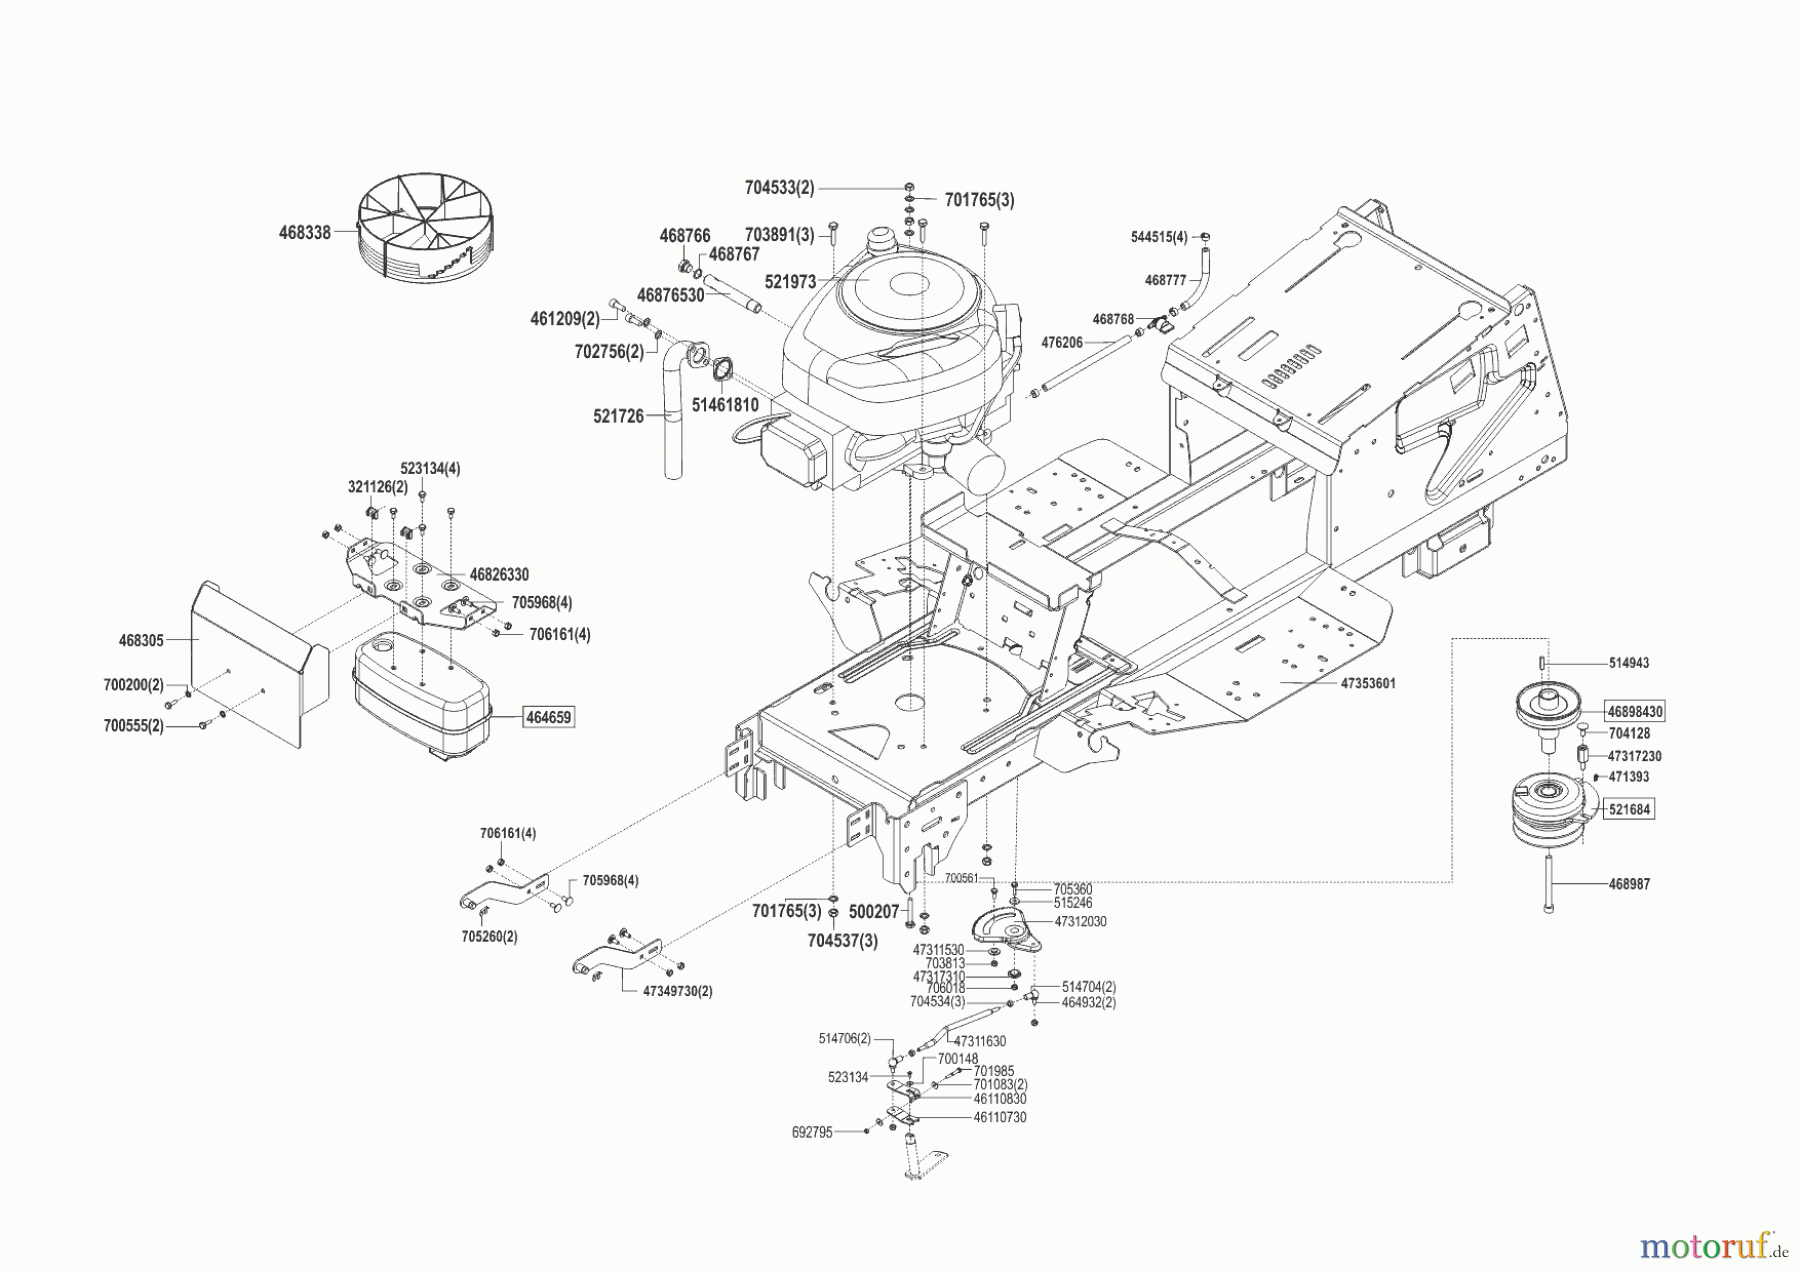  Powerline Gartentechnik Rasentraktor T 18-95.4 HD  03/2016 - 09/2016 Seite 2